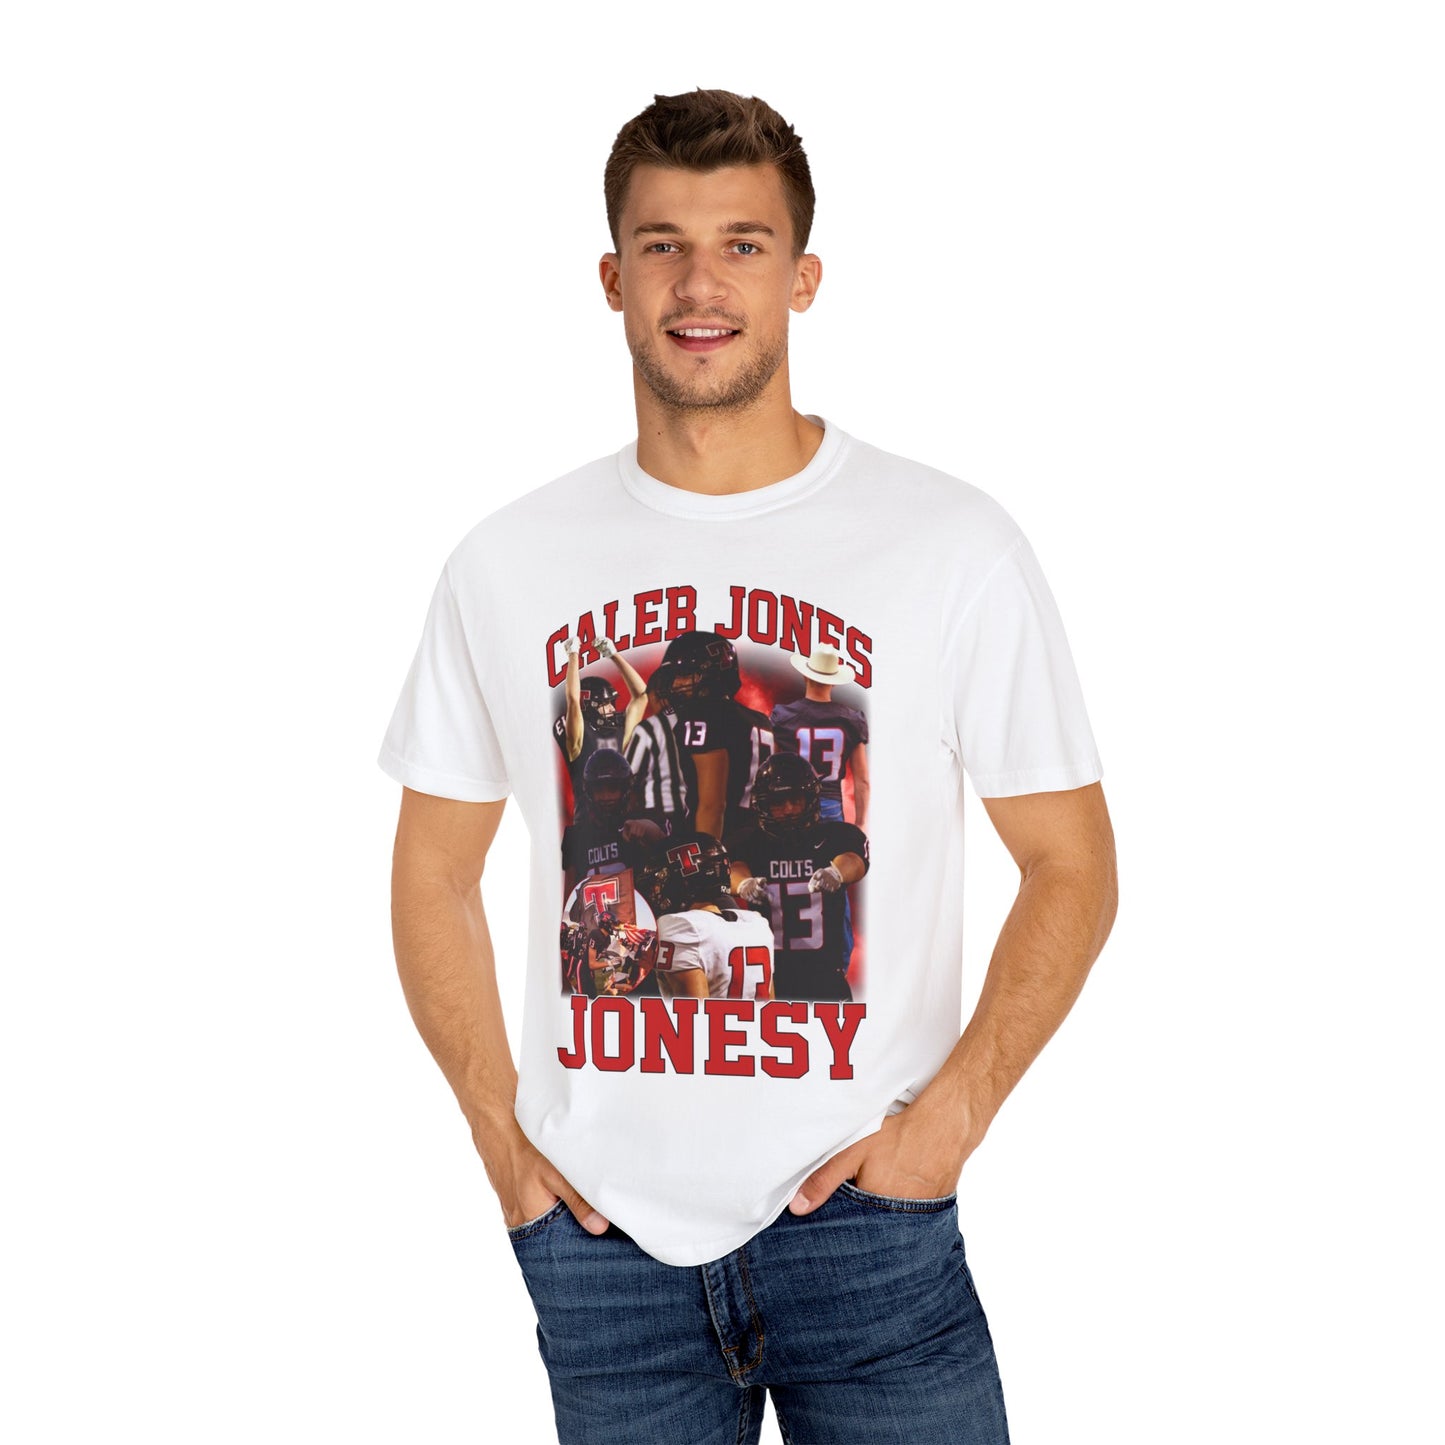 Caleb Jones Graphic Tee shirt